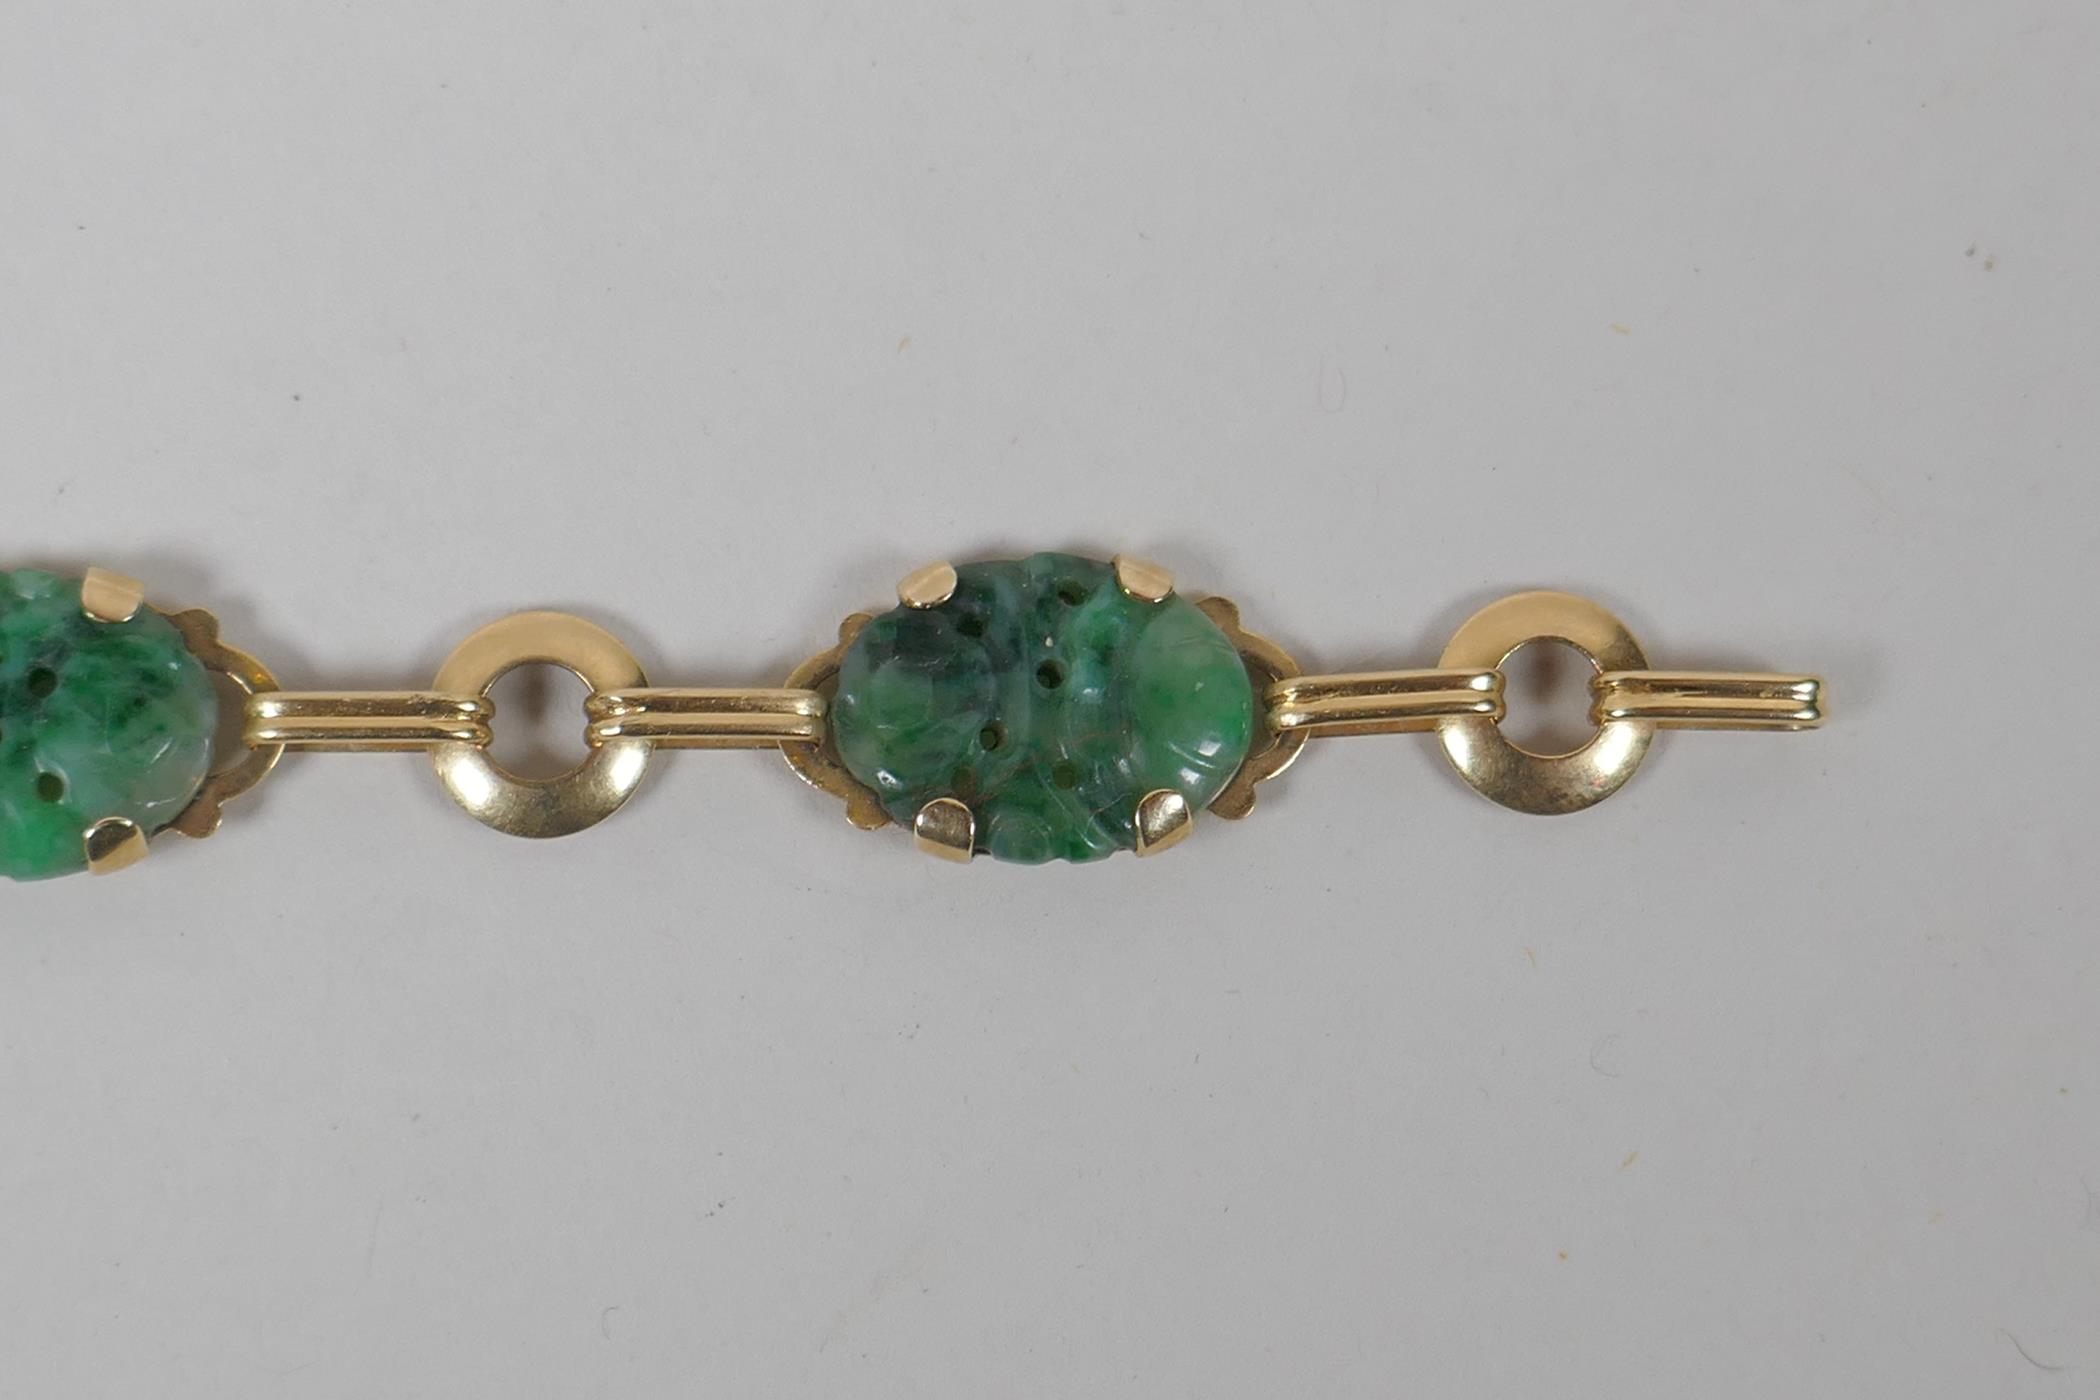 A 14ct gold and mottled jade bracelet, 18cm long - Image 4 of 5